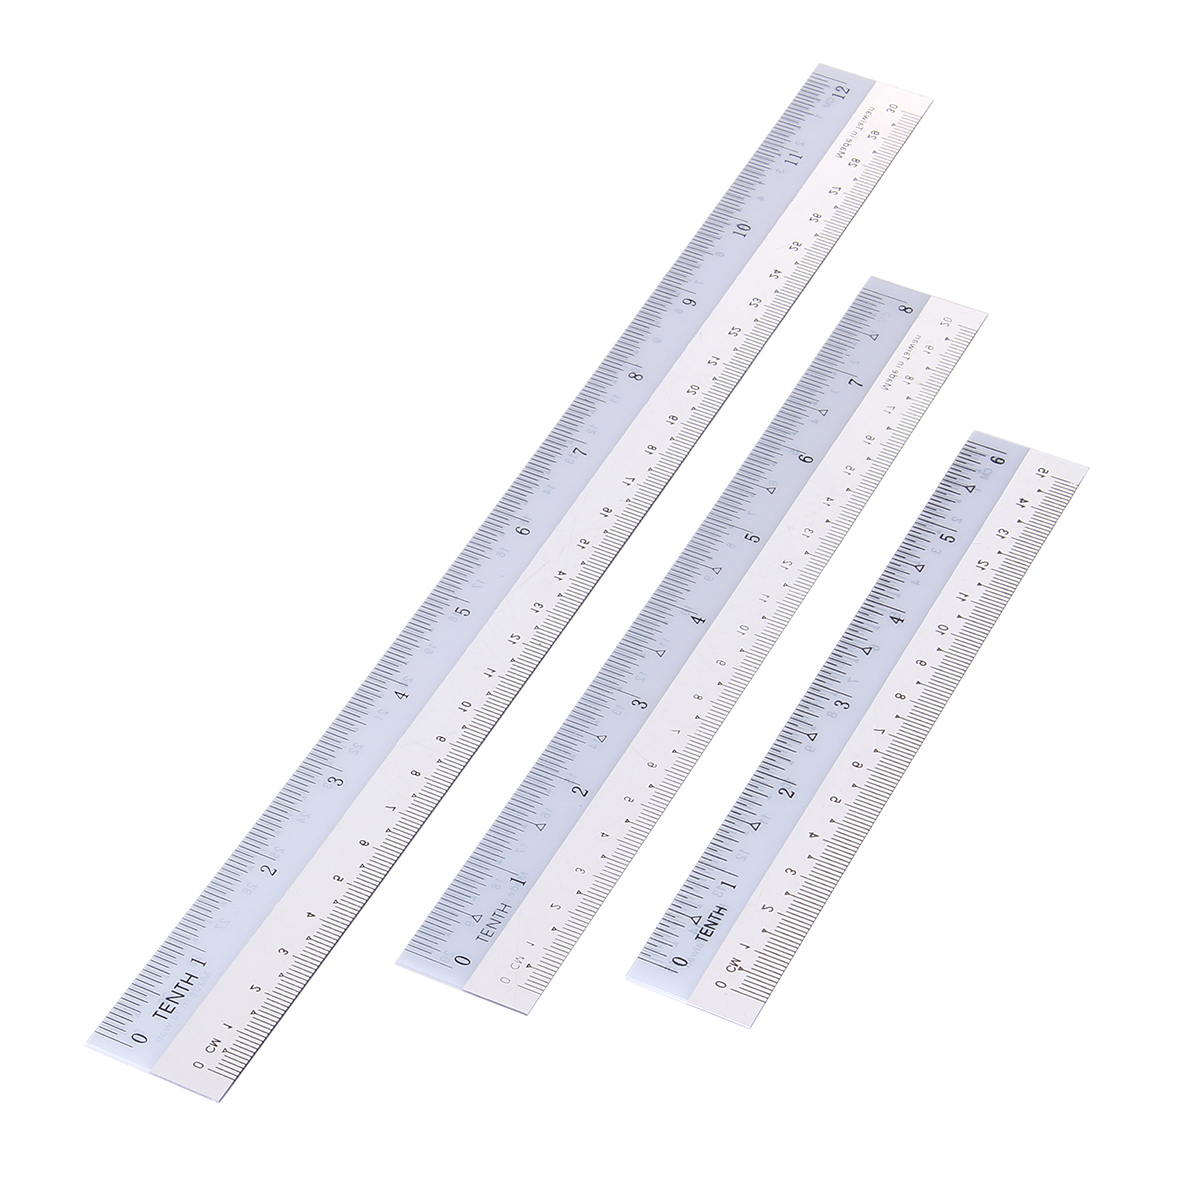 

15cm 20cm 30cm Flexible Ruler Measure Straight Ruler Measuring Tool